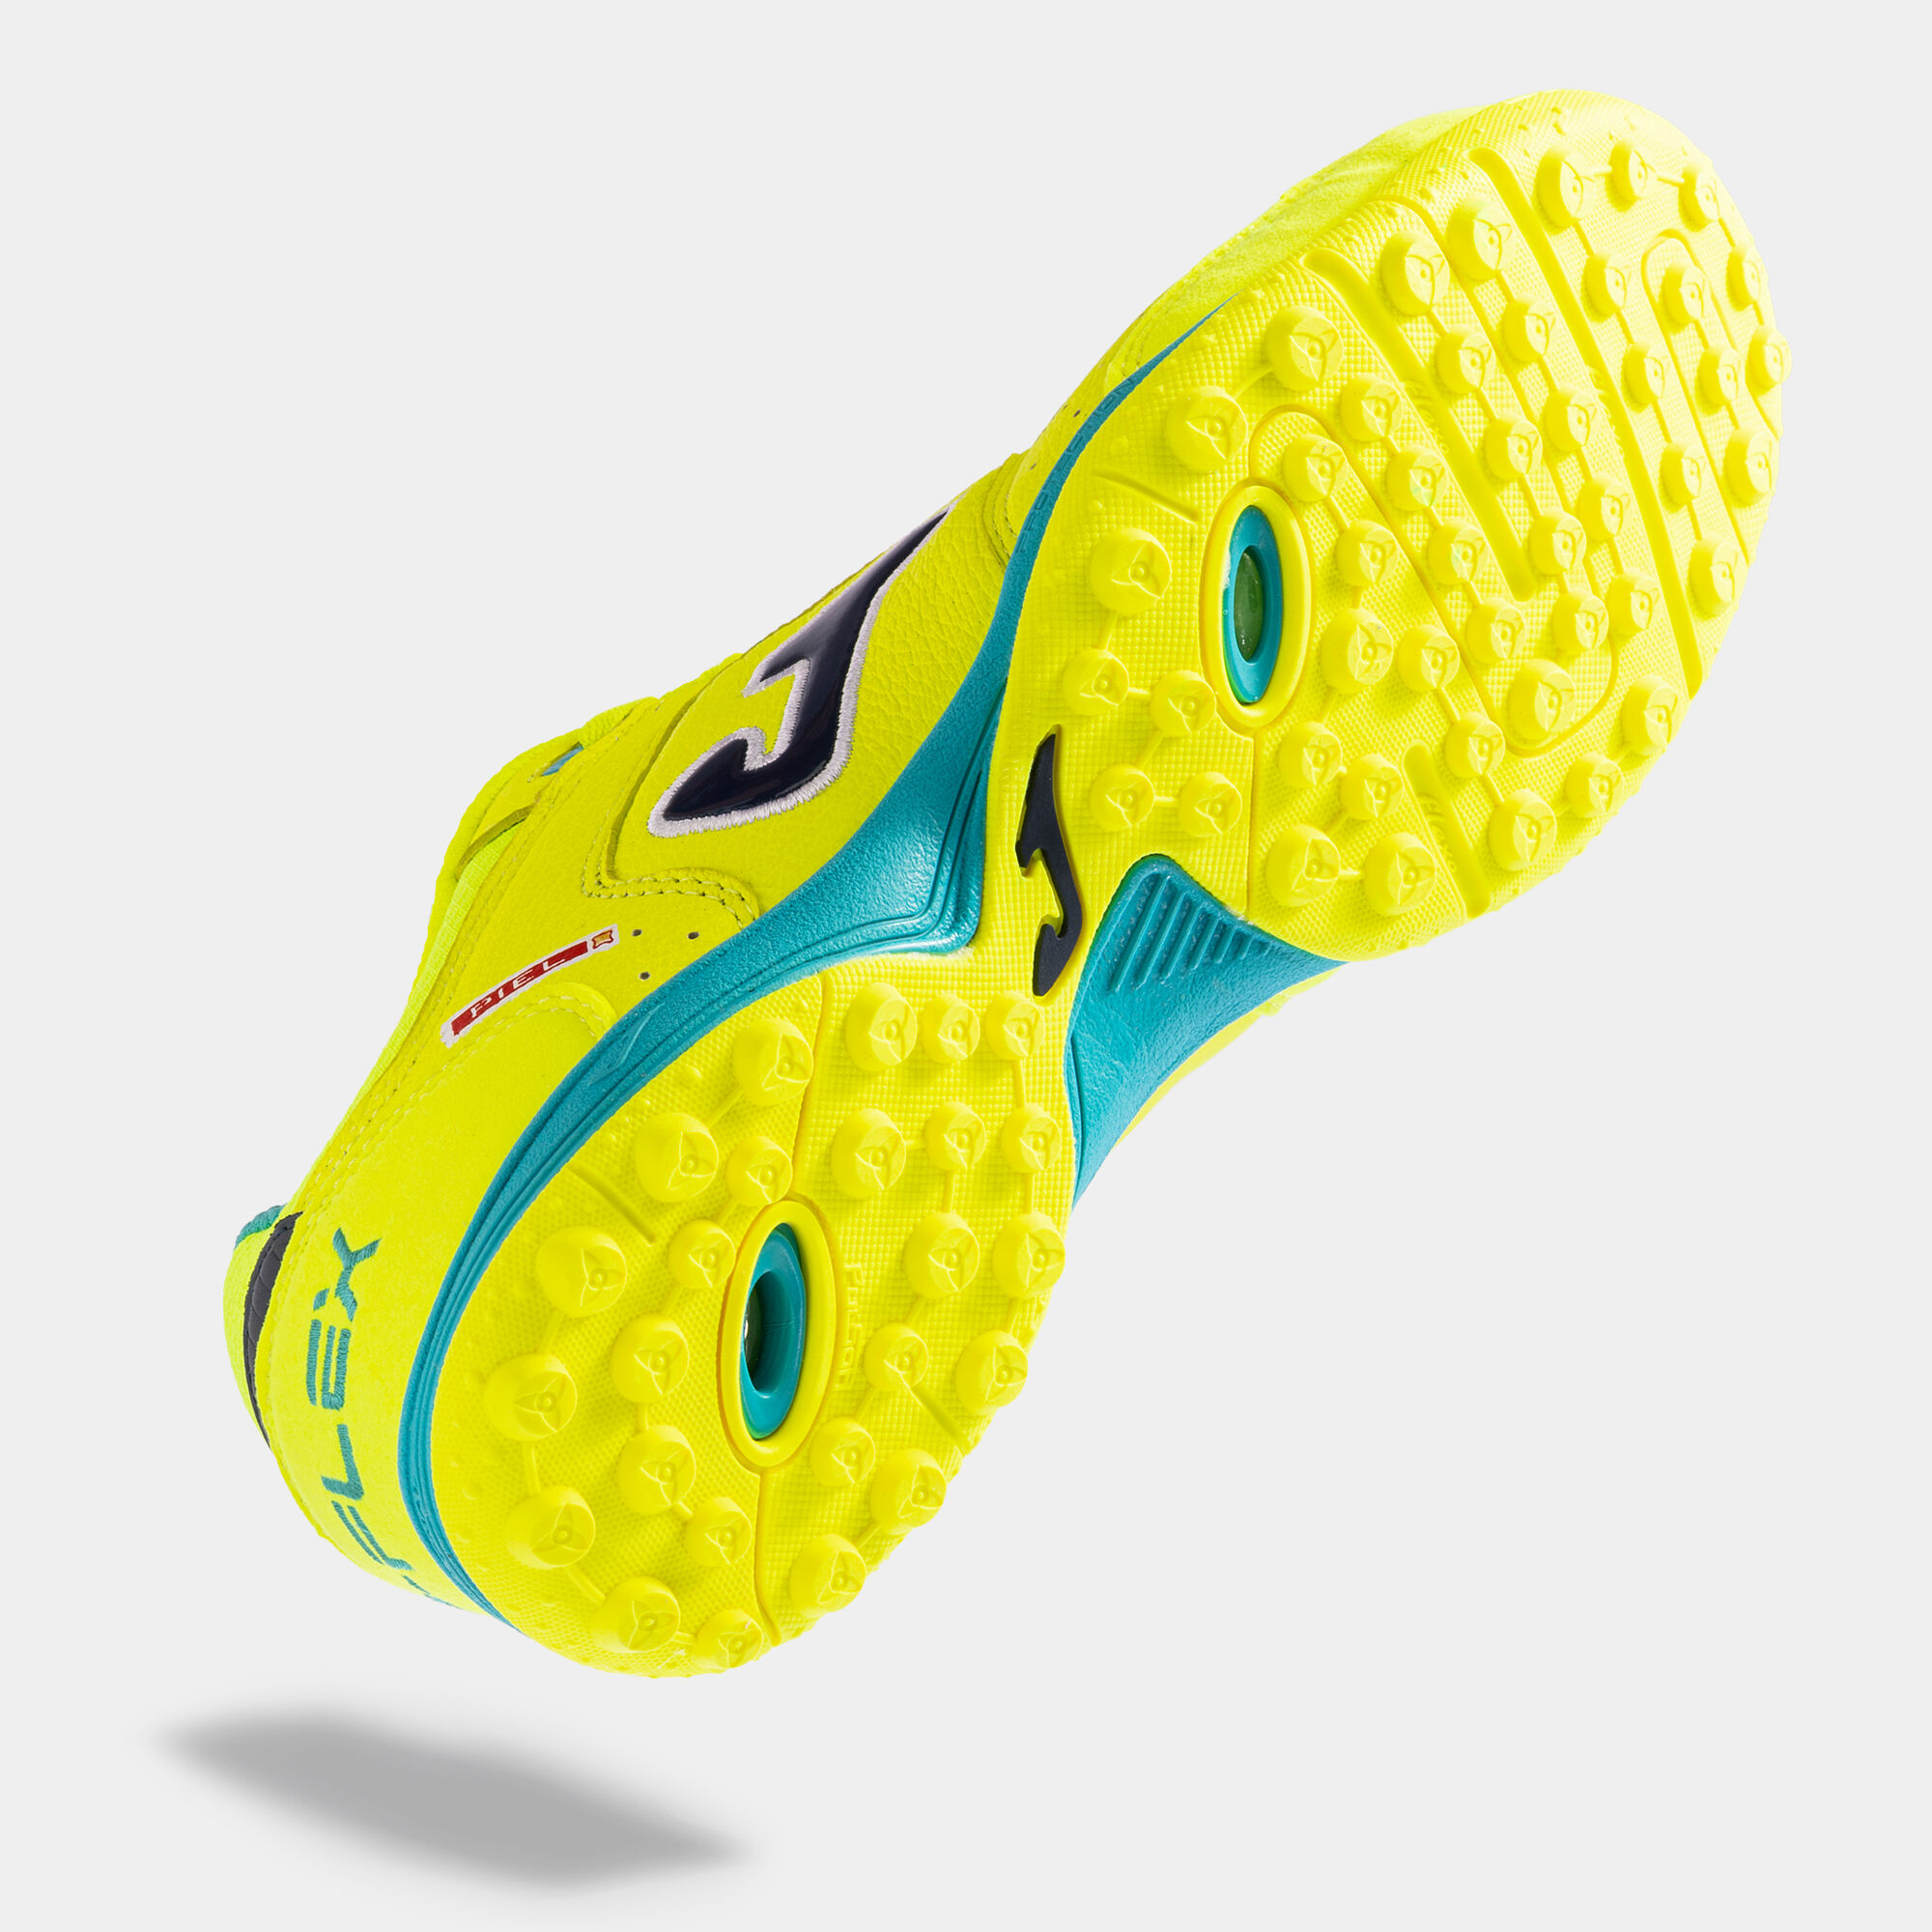 Joma Top Flex 23 Indoor Soccer Shoes